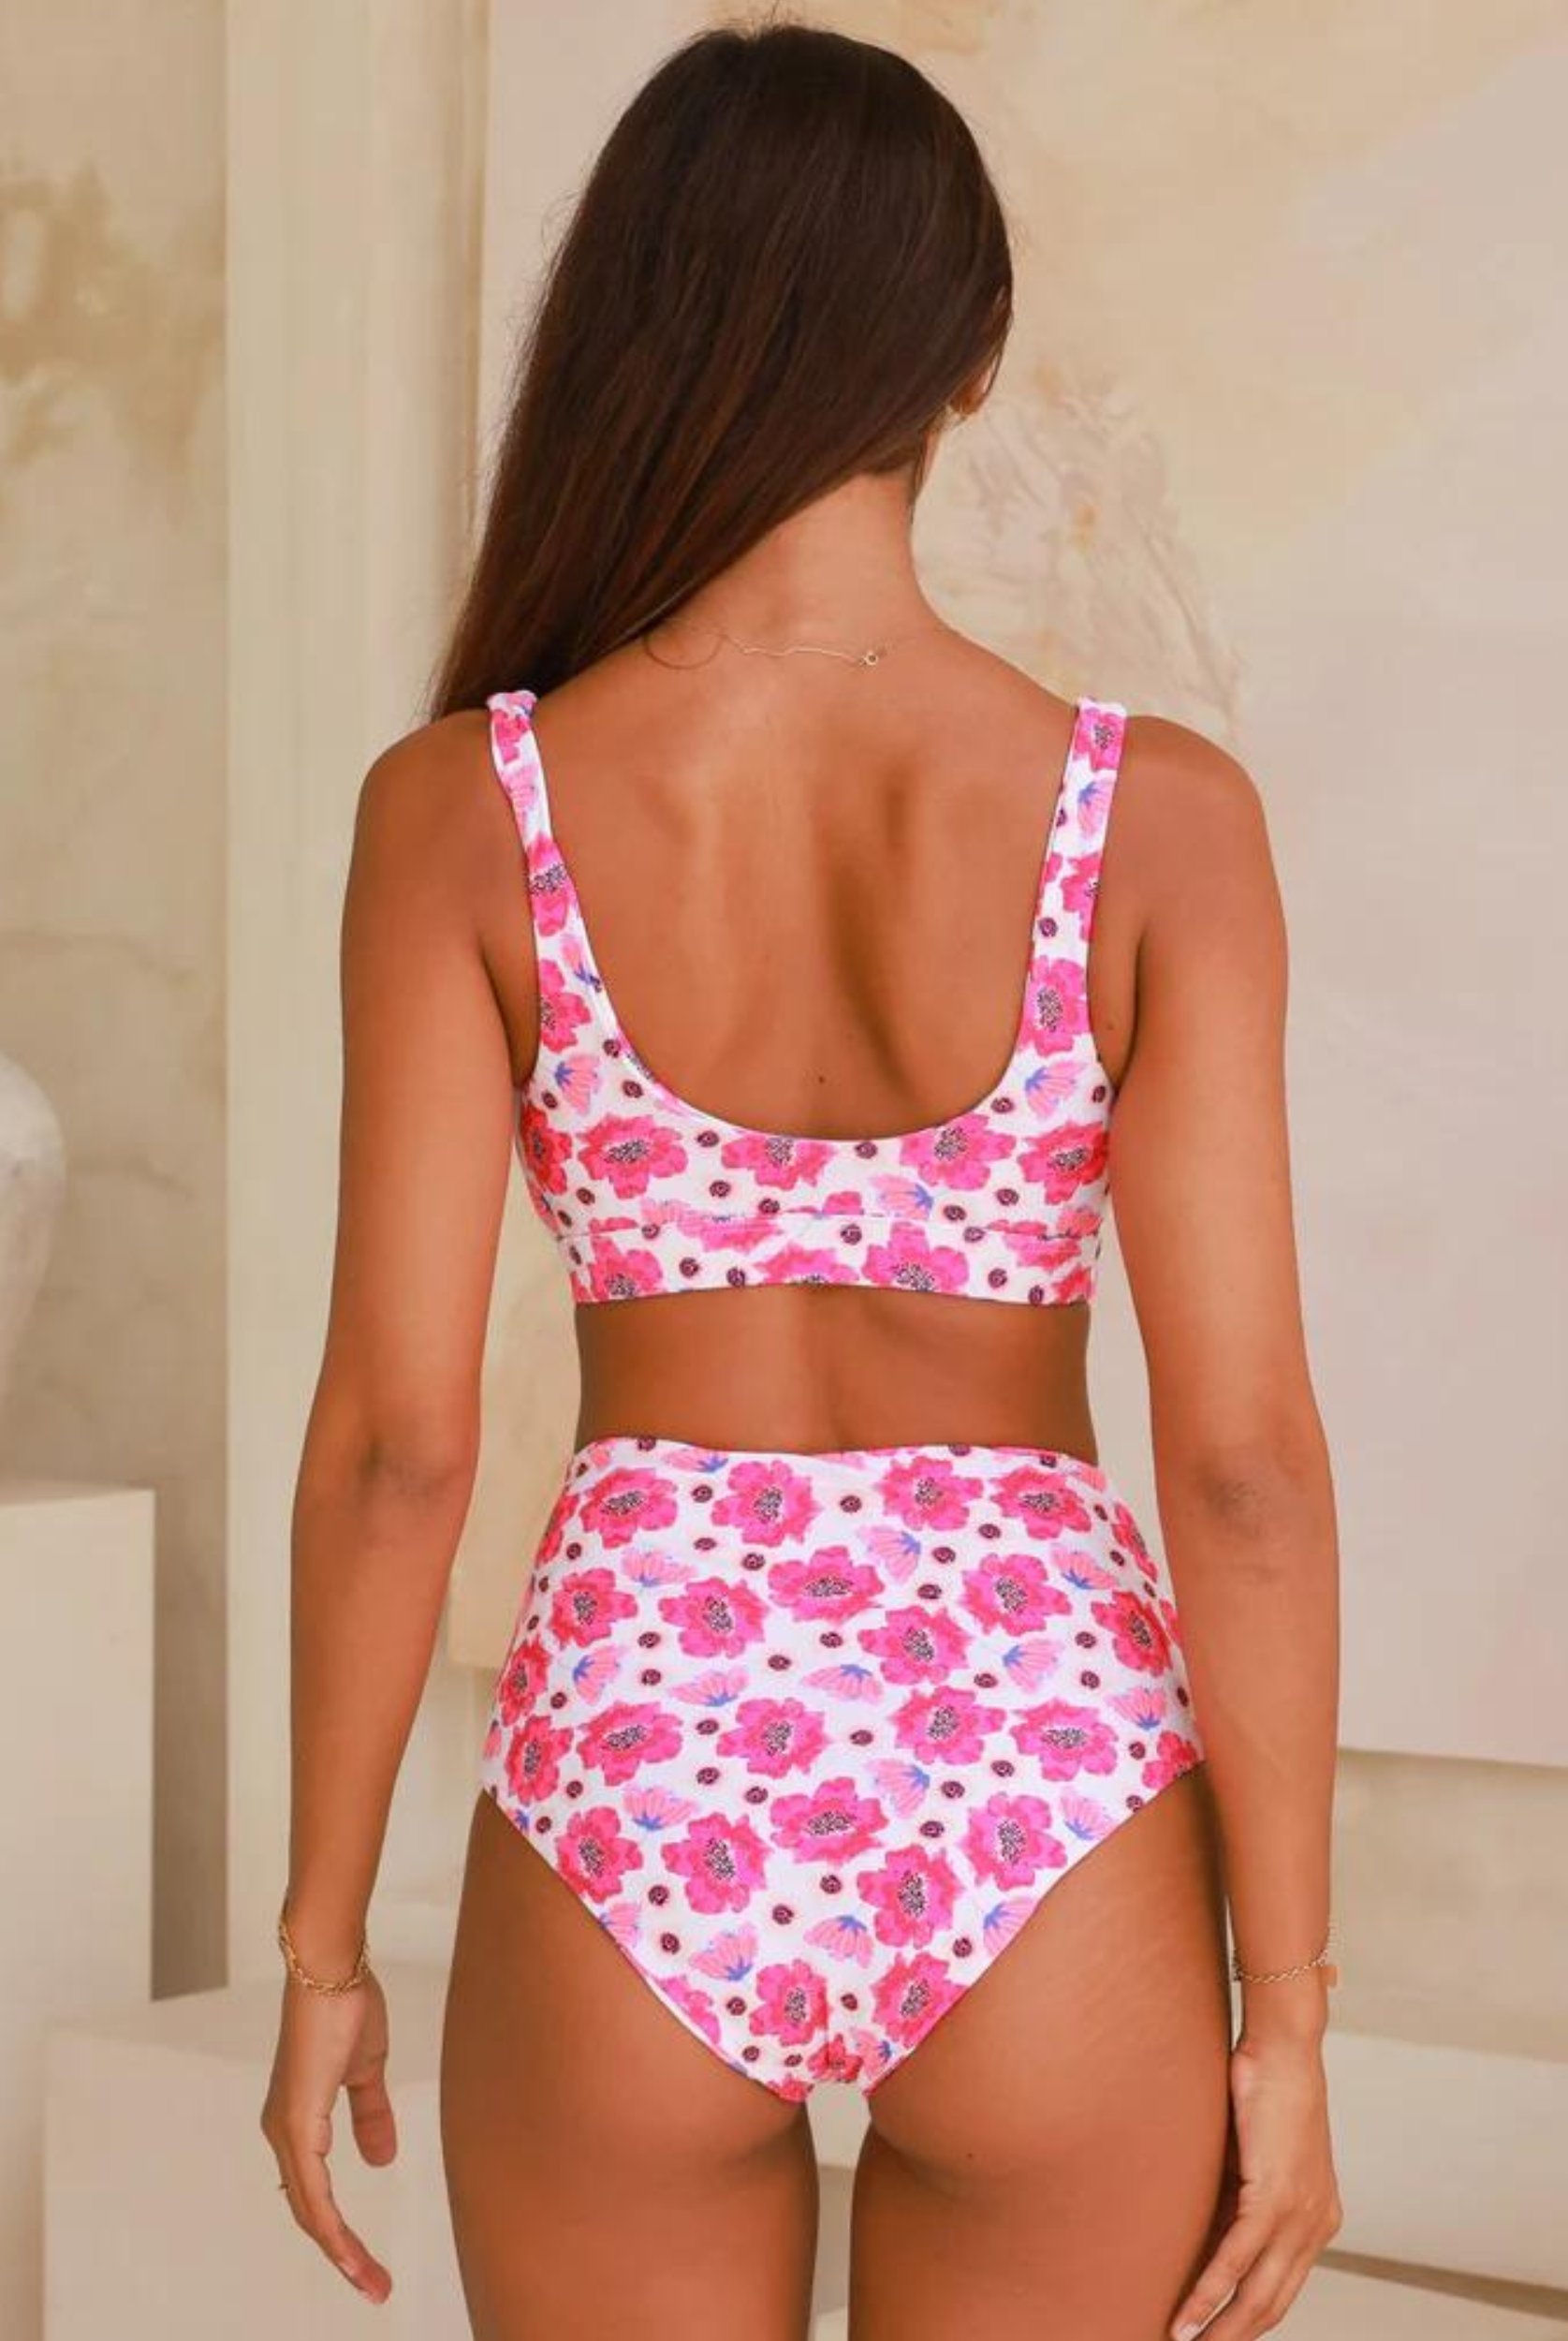 Poppy print gia bikini top from Infamous Swim